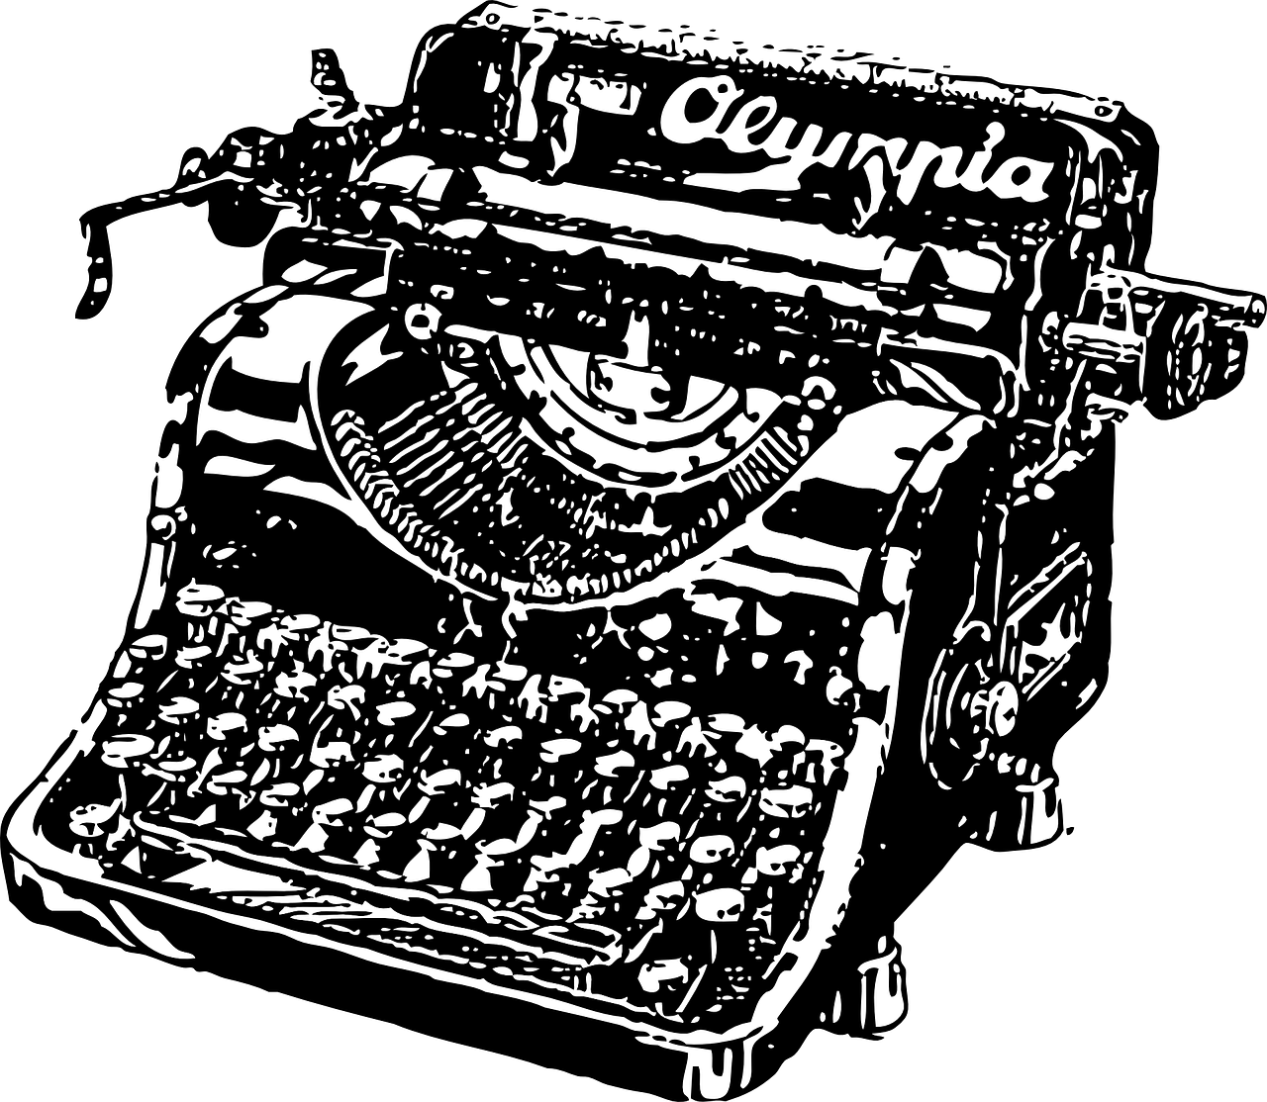 Máquinas de escribir antiguas, especial coleccionistas